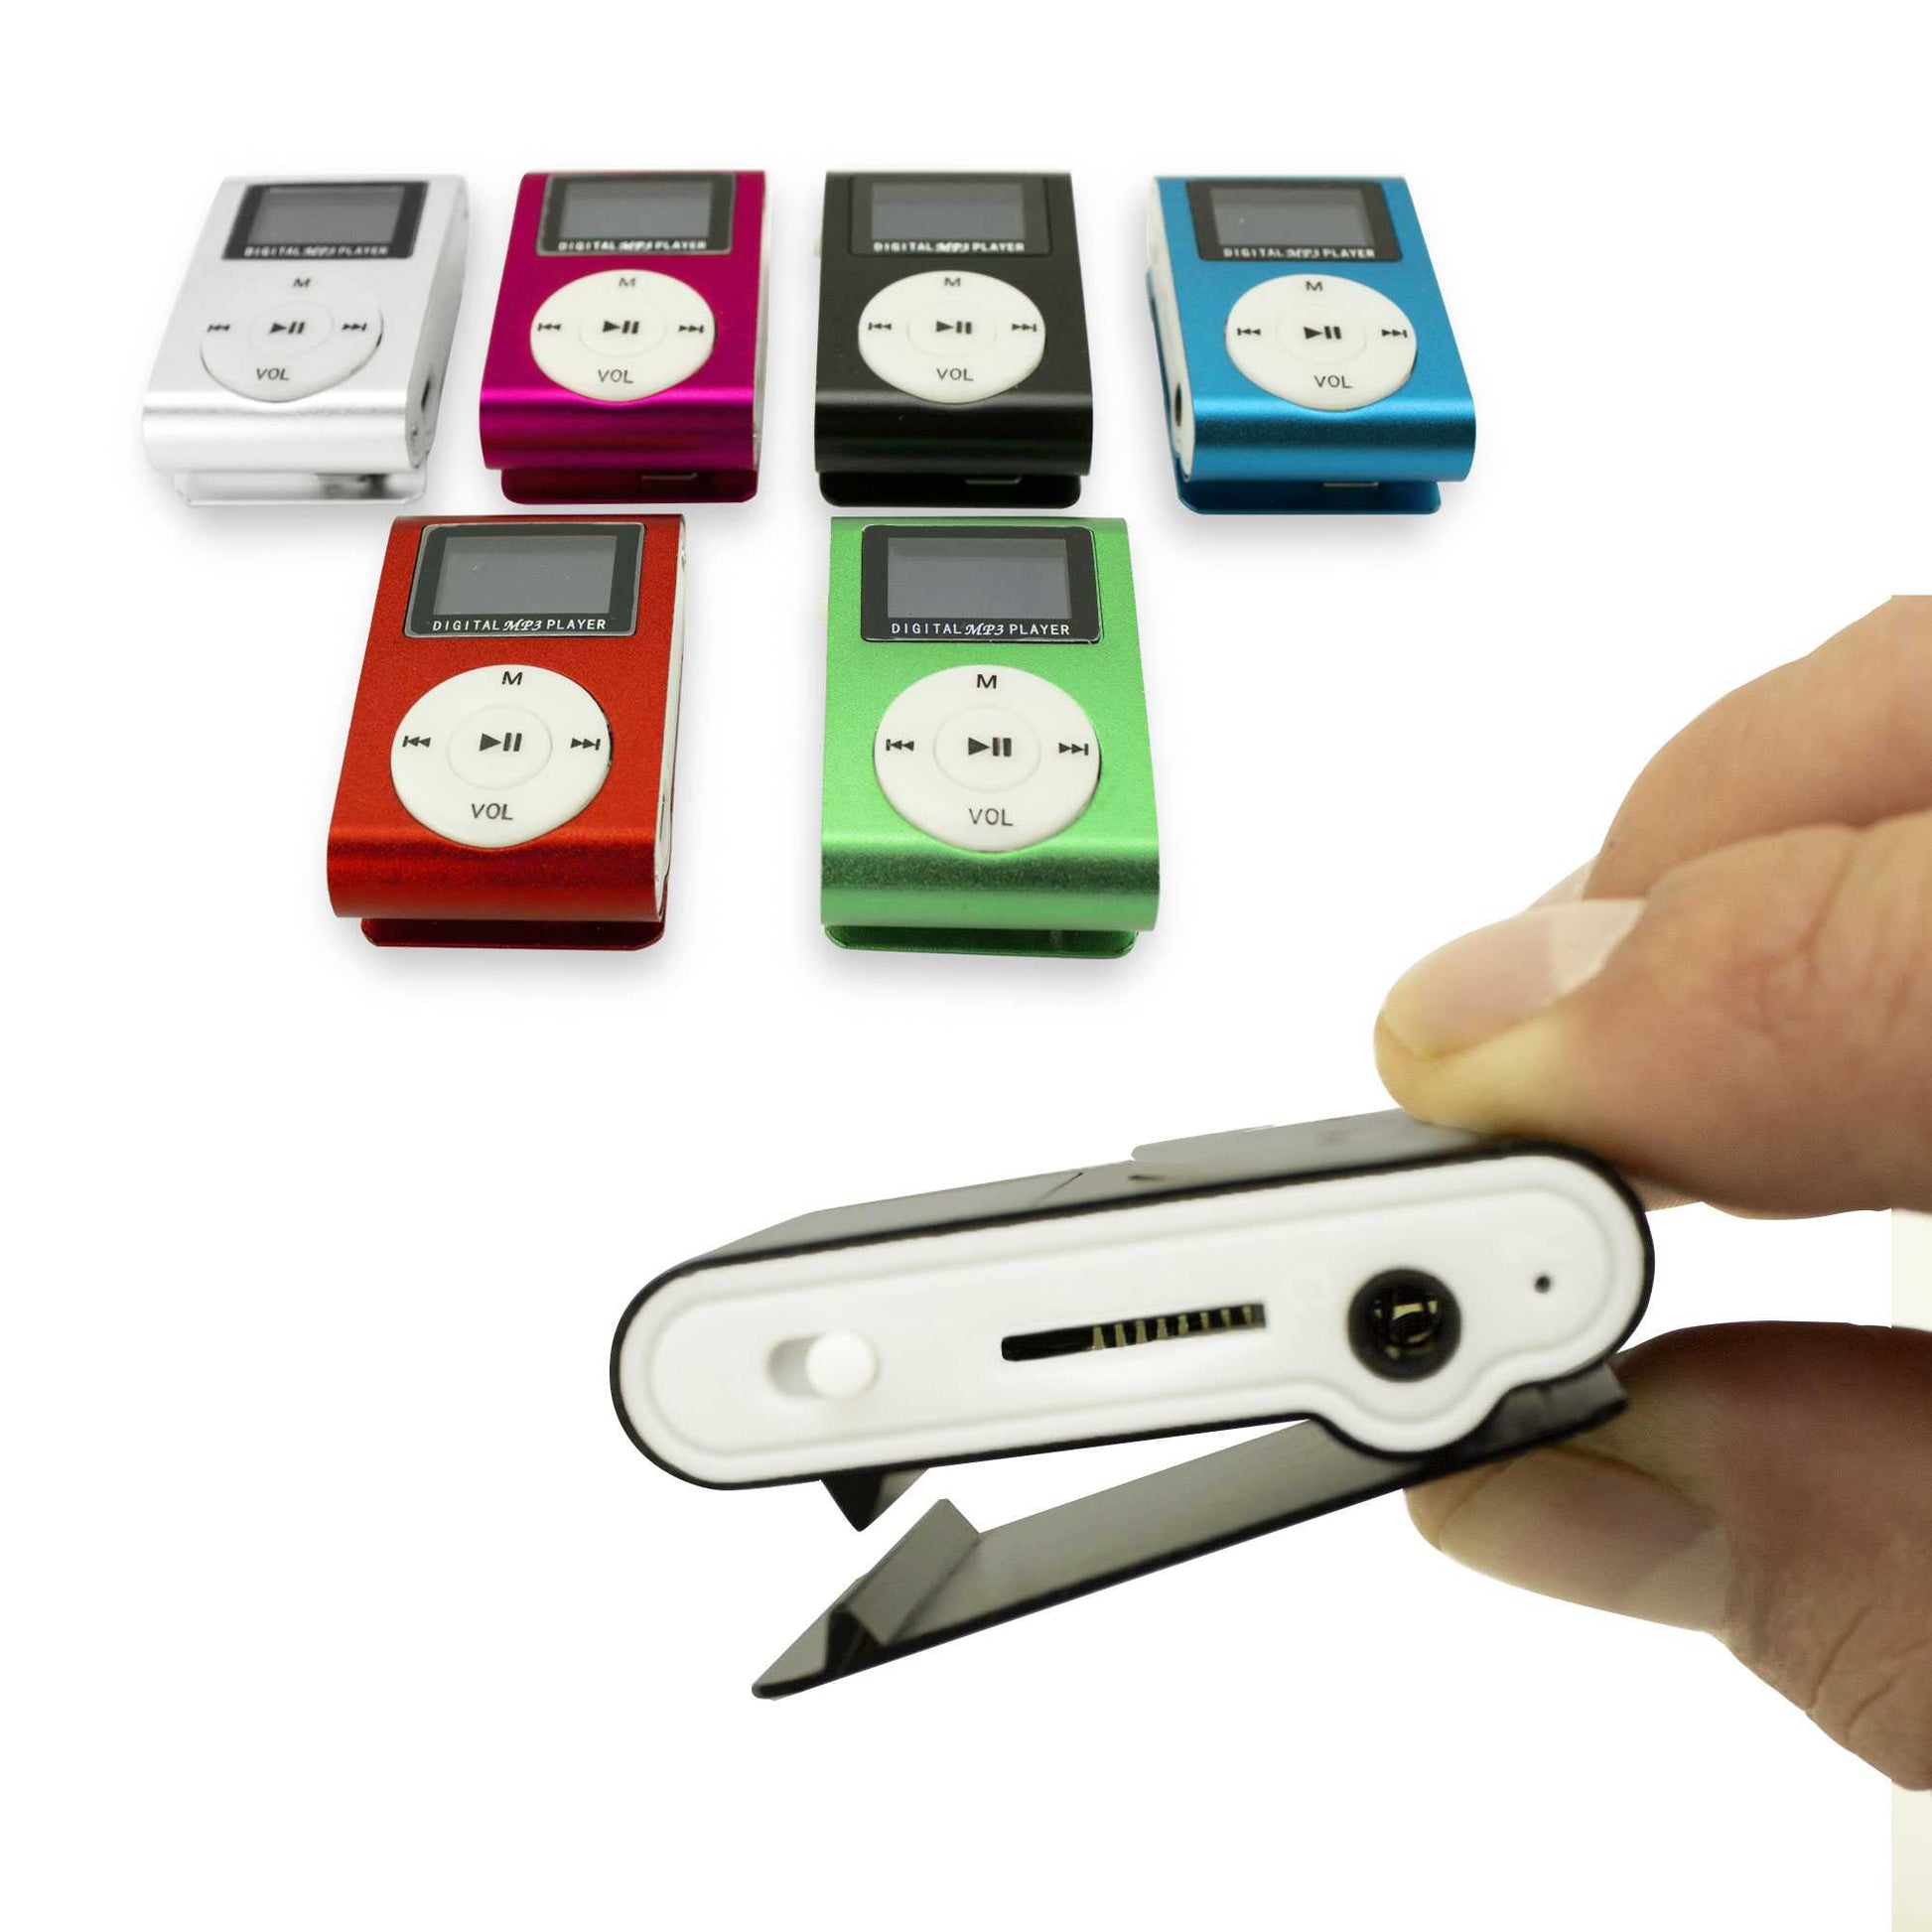 Lector Reproductor MP3 Player Azul Aluminio Puerto Mini USB Ranura para Tarjeta Micro SD con Clip Pantalla